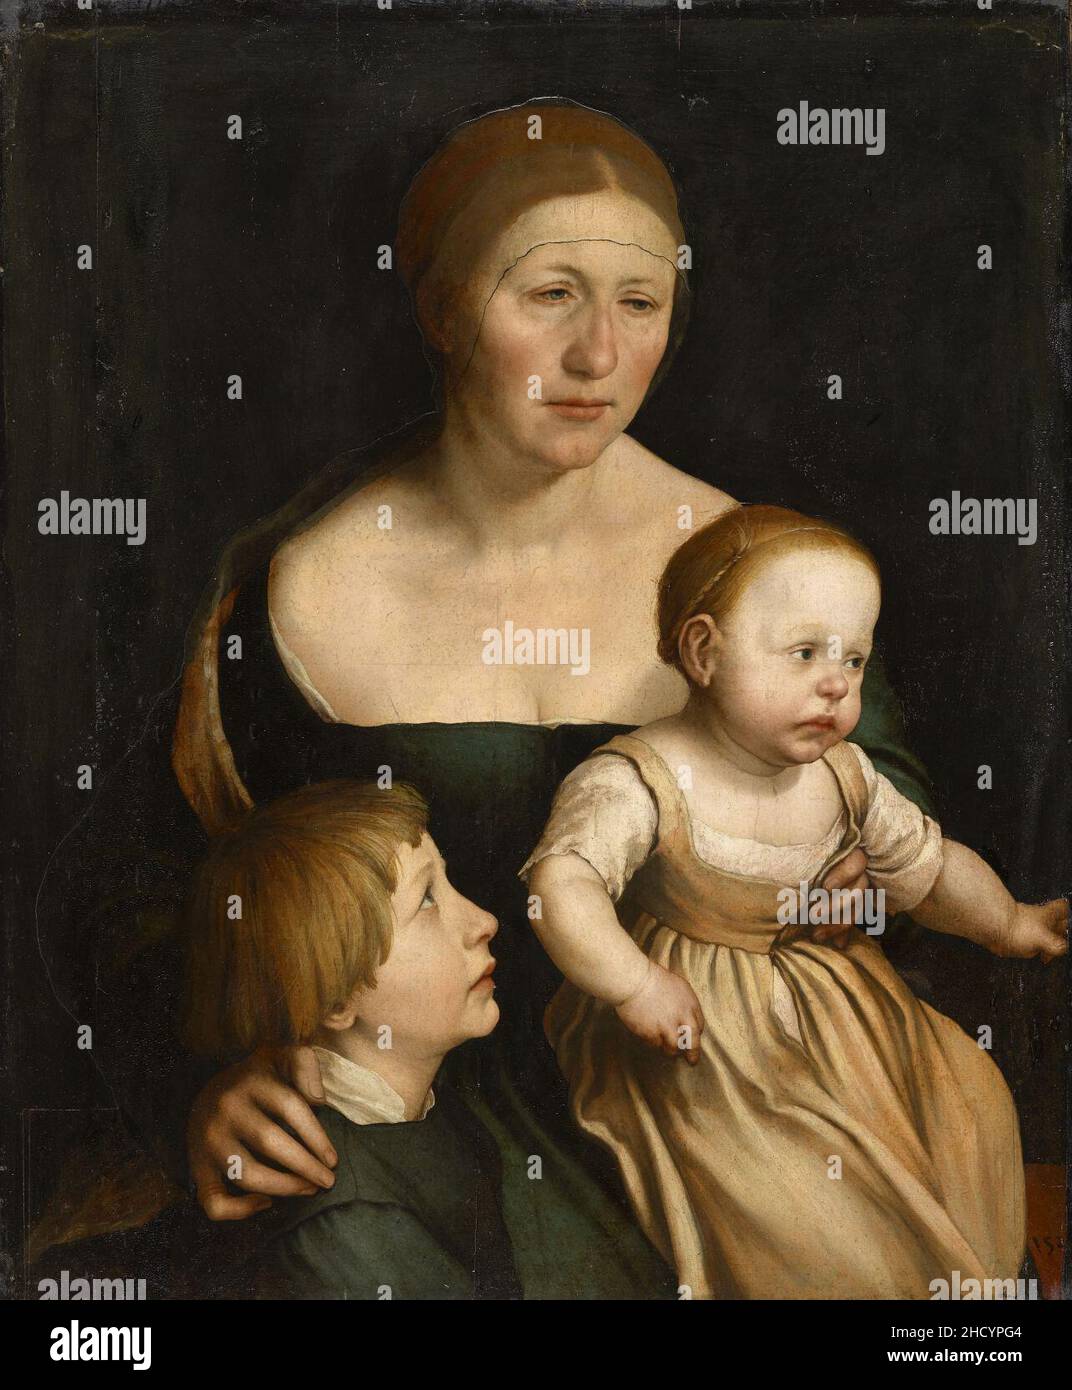 Retrato de la esposa del artista con sus dos hijos, por Hans Holbein el Joven. Stock Photo